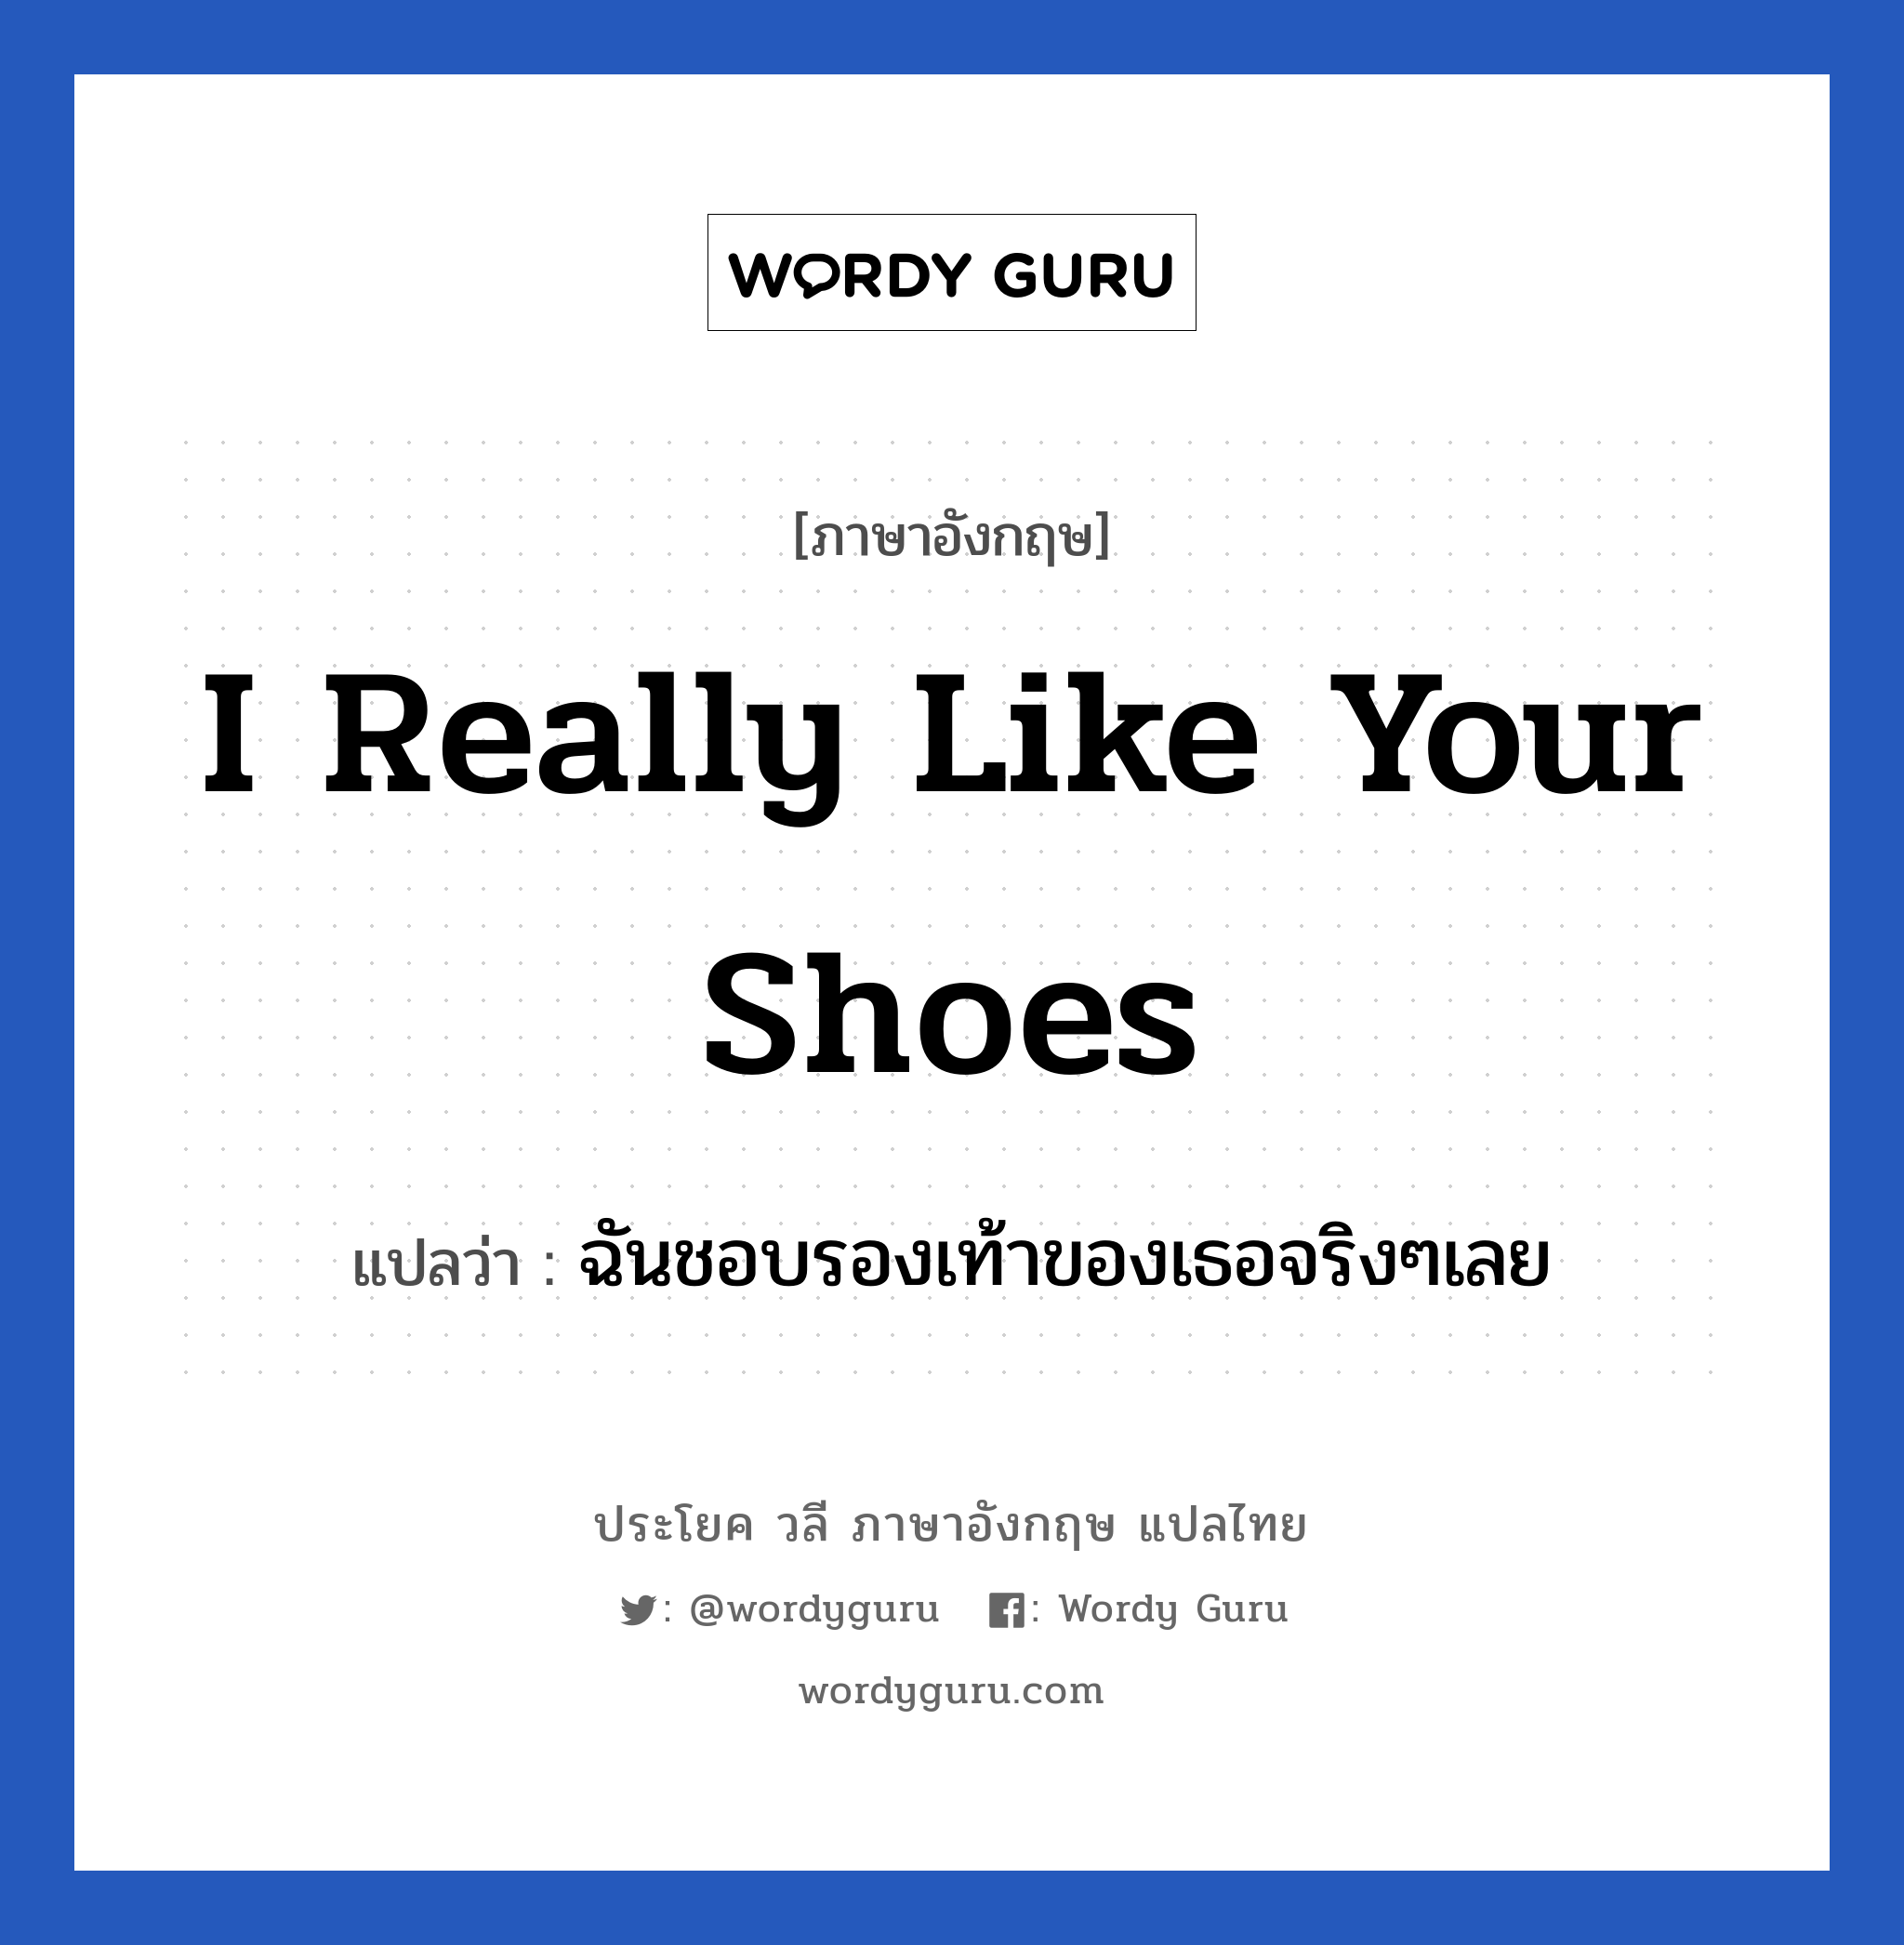 I really like your shoes แปลว่า?, วลีภาษาอังกฤษ I really like your shoes แปลว่า ฉันชอบรองเท้าของเธอจริงๆเลย หมวด คำถาม